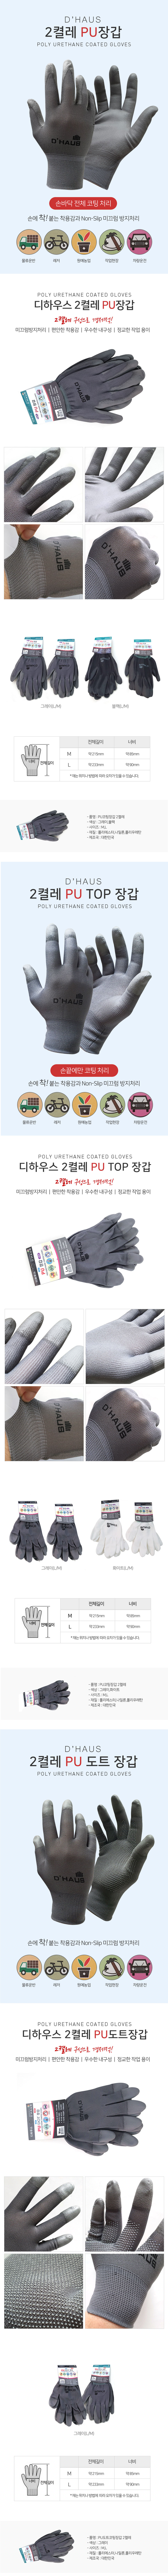 dhous-gloves.jpg